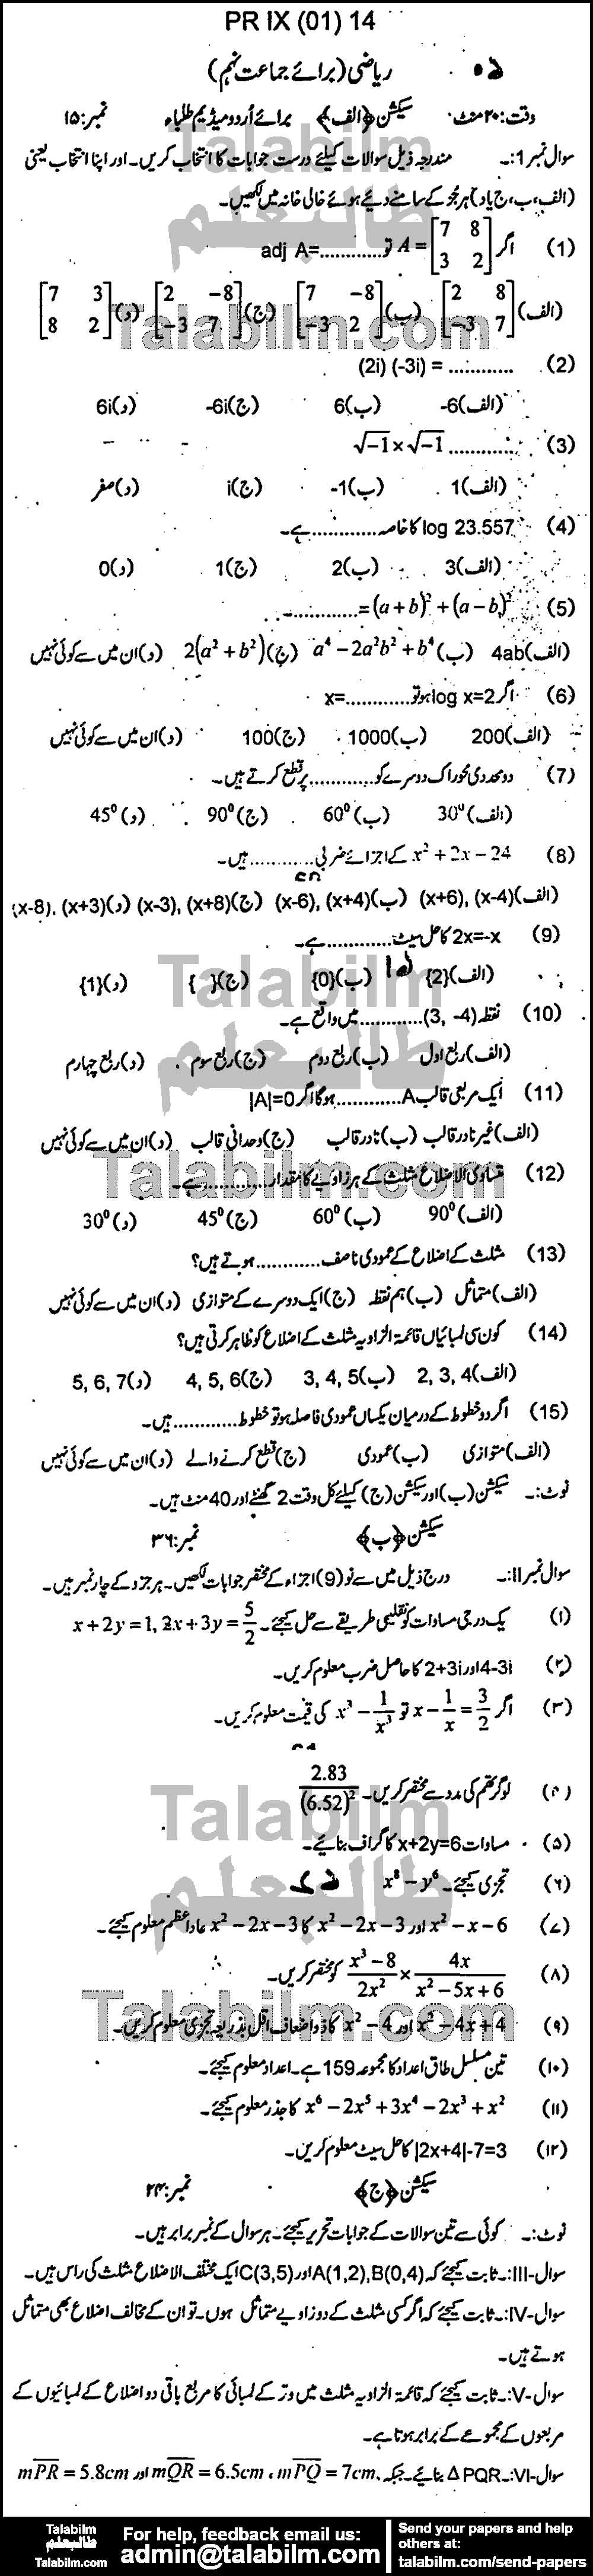 Math 0 past paper for Urdu Medium 2014 Group-I